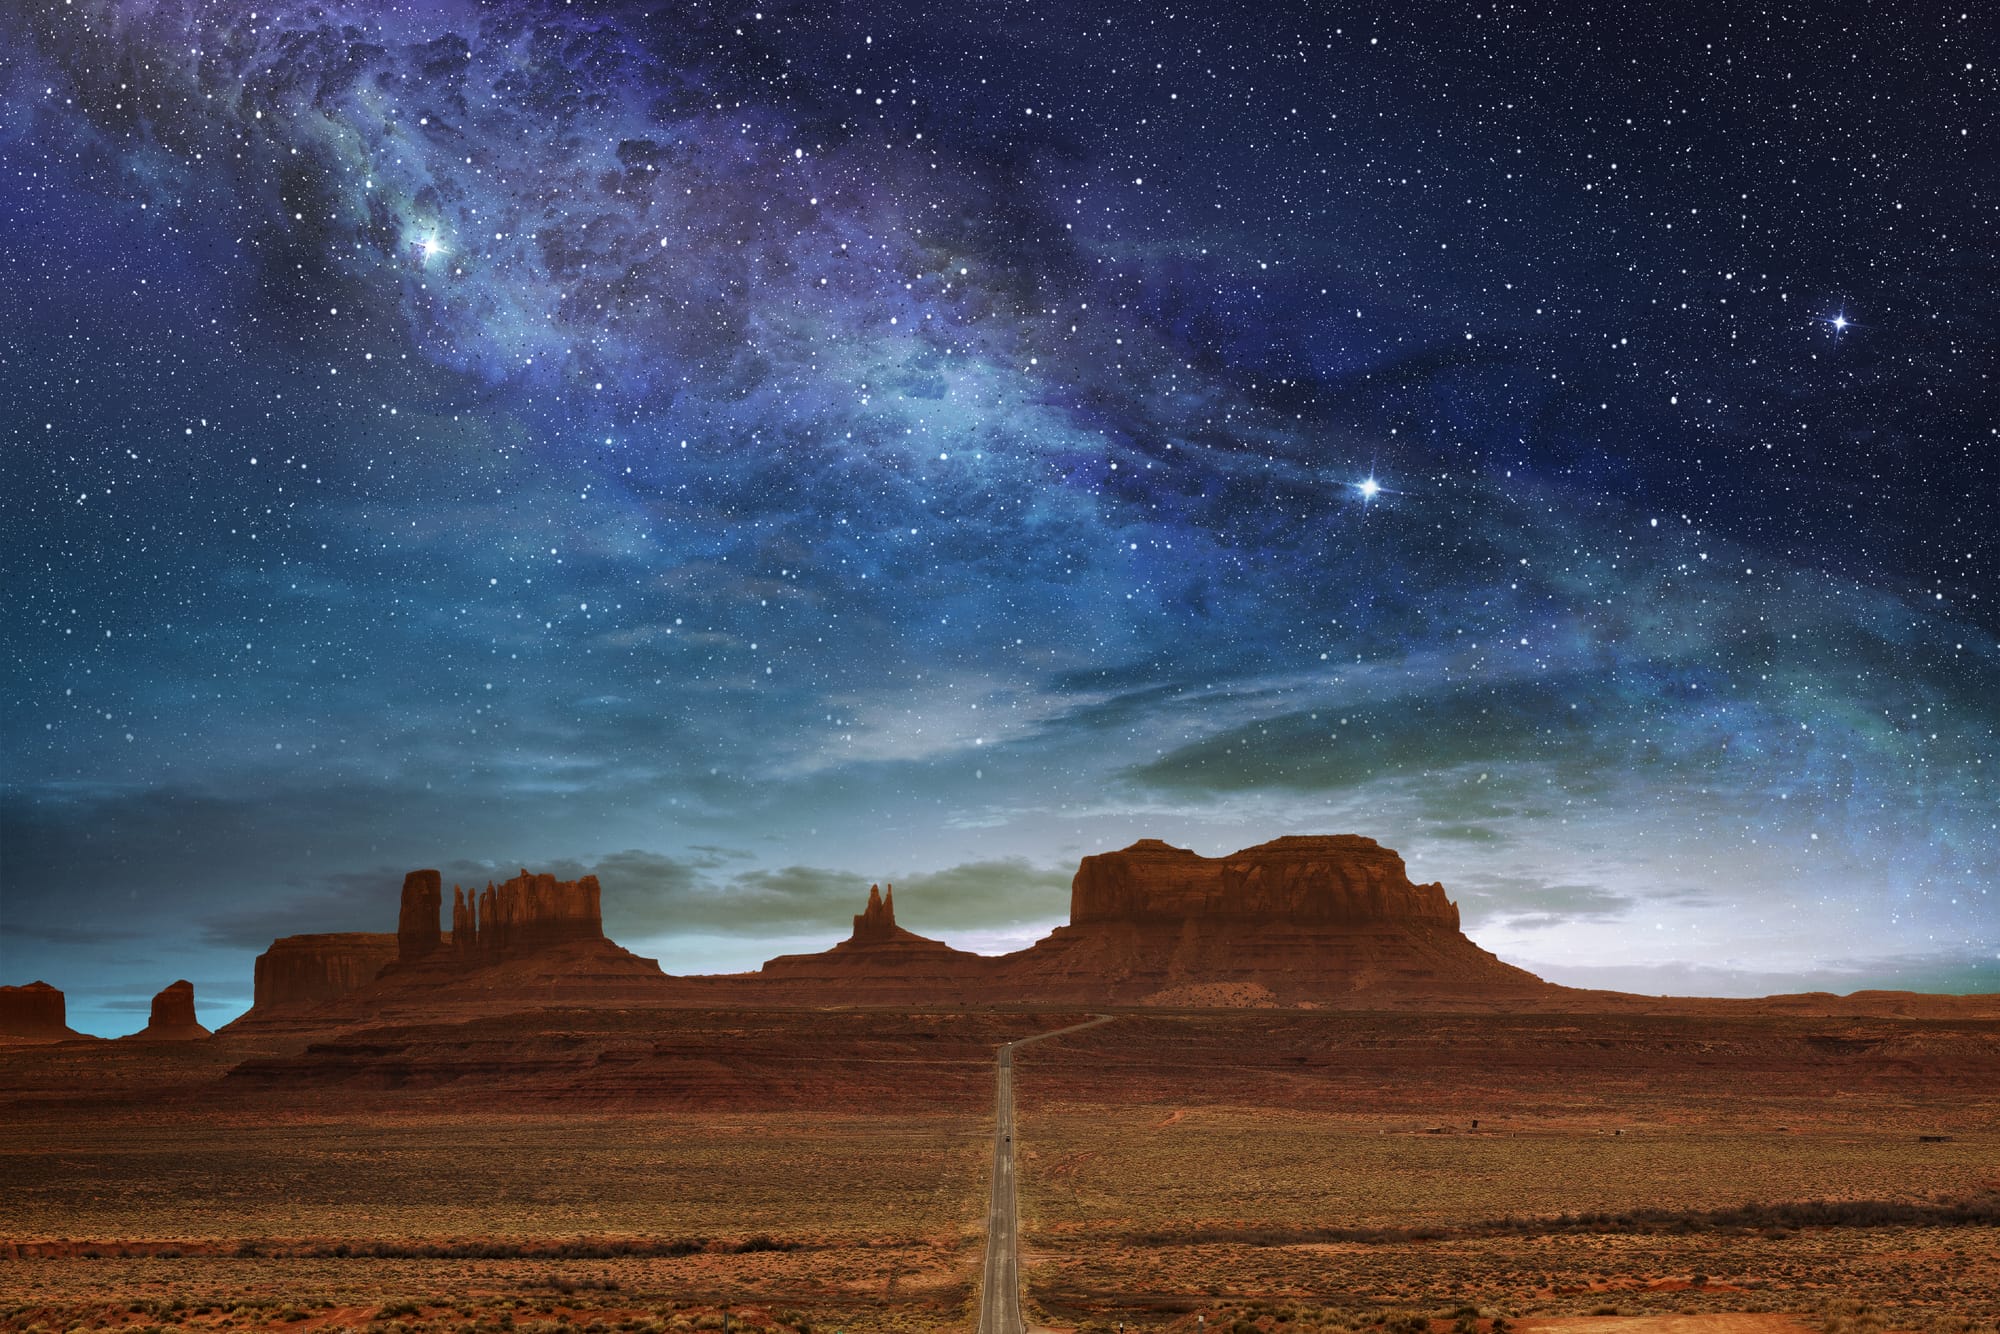 Utah's Dark Sky Parks: Hvor finder du de bedste natteudsigter